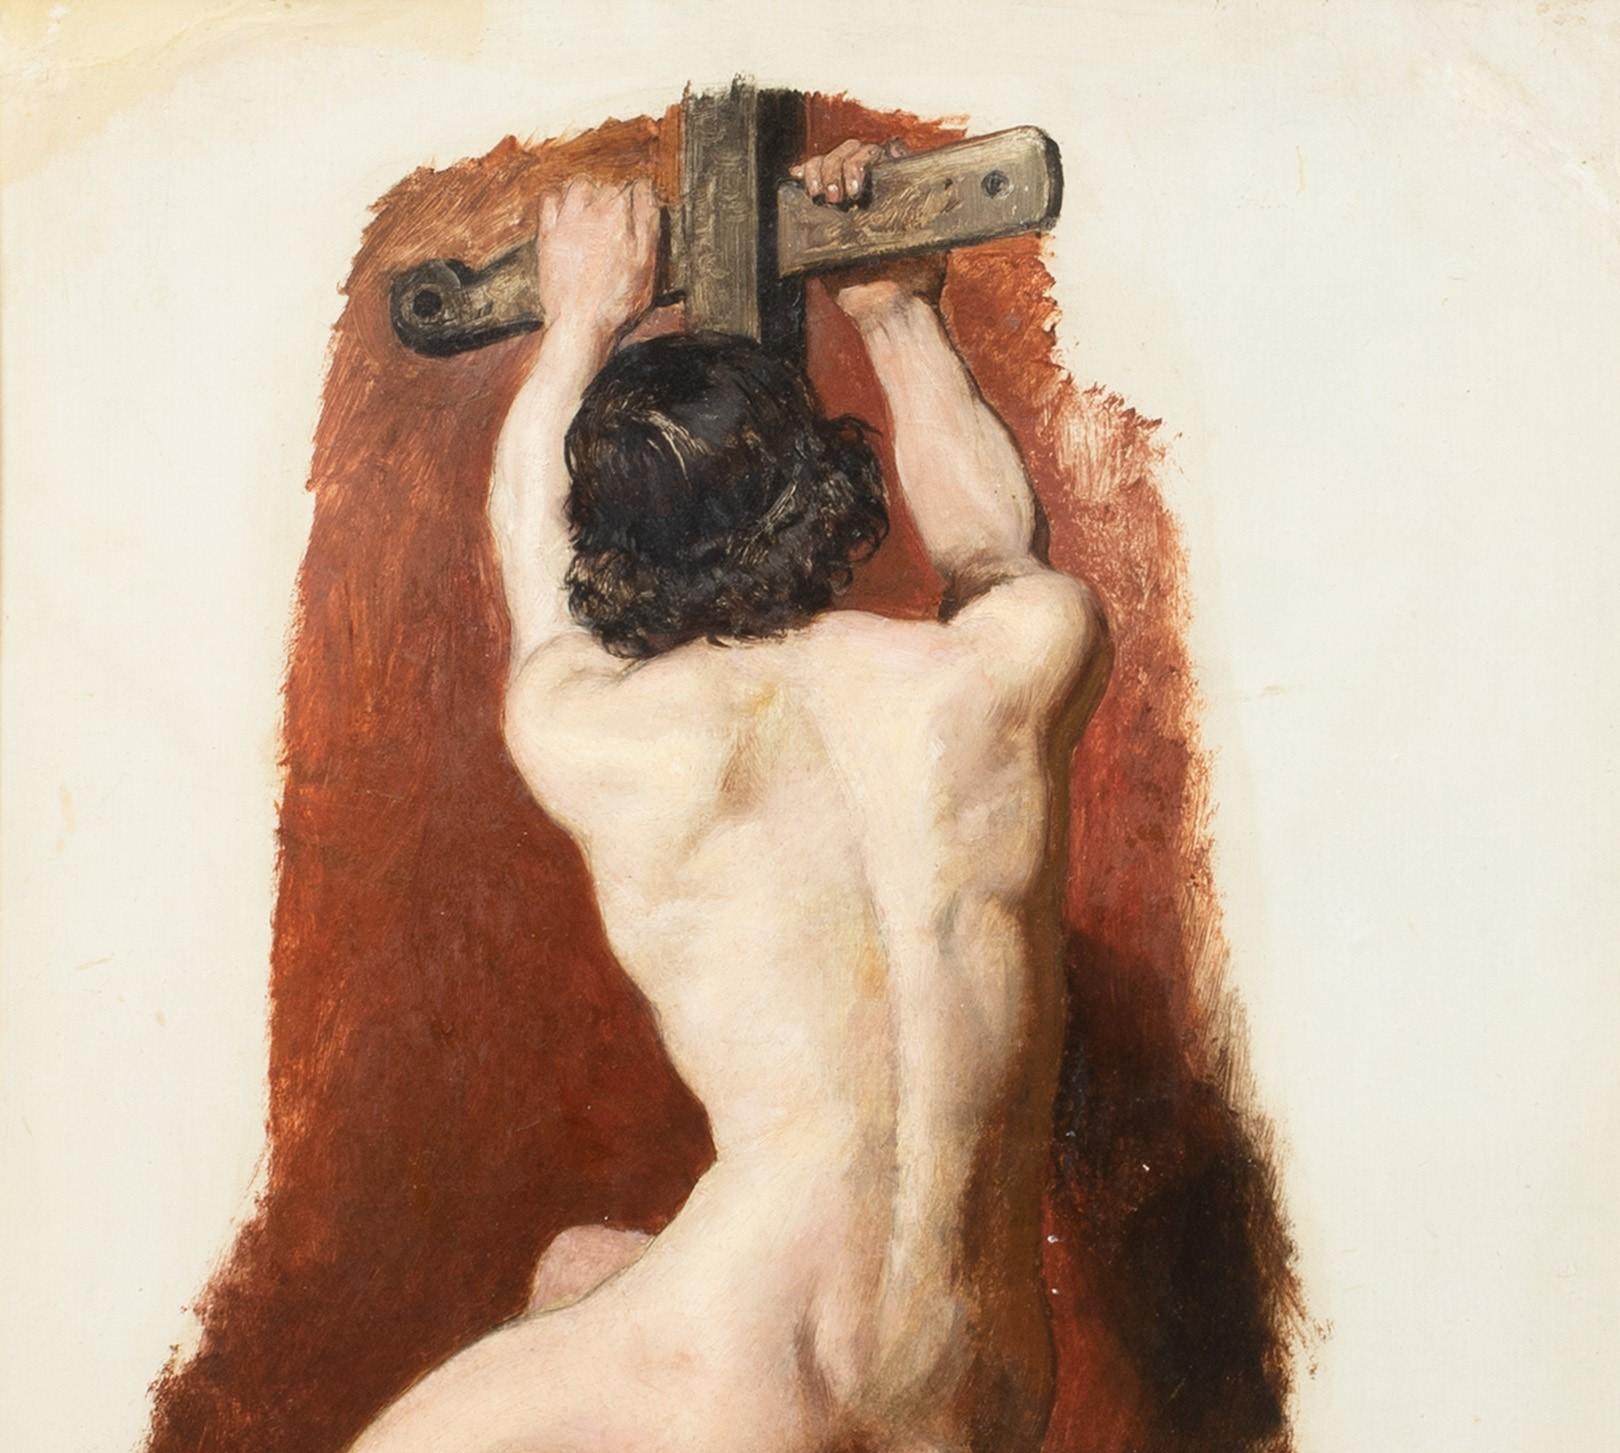 Porträt eines nackten Mannes mit Kruzifix, 19. Jahrhundert (Beige), Still-Life Painting, von William Etty R.A.